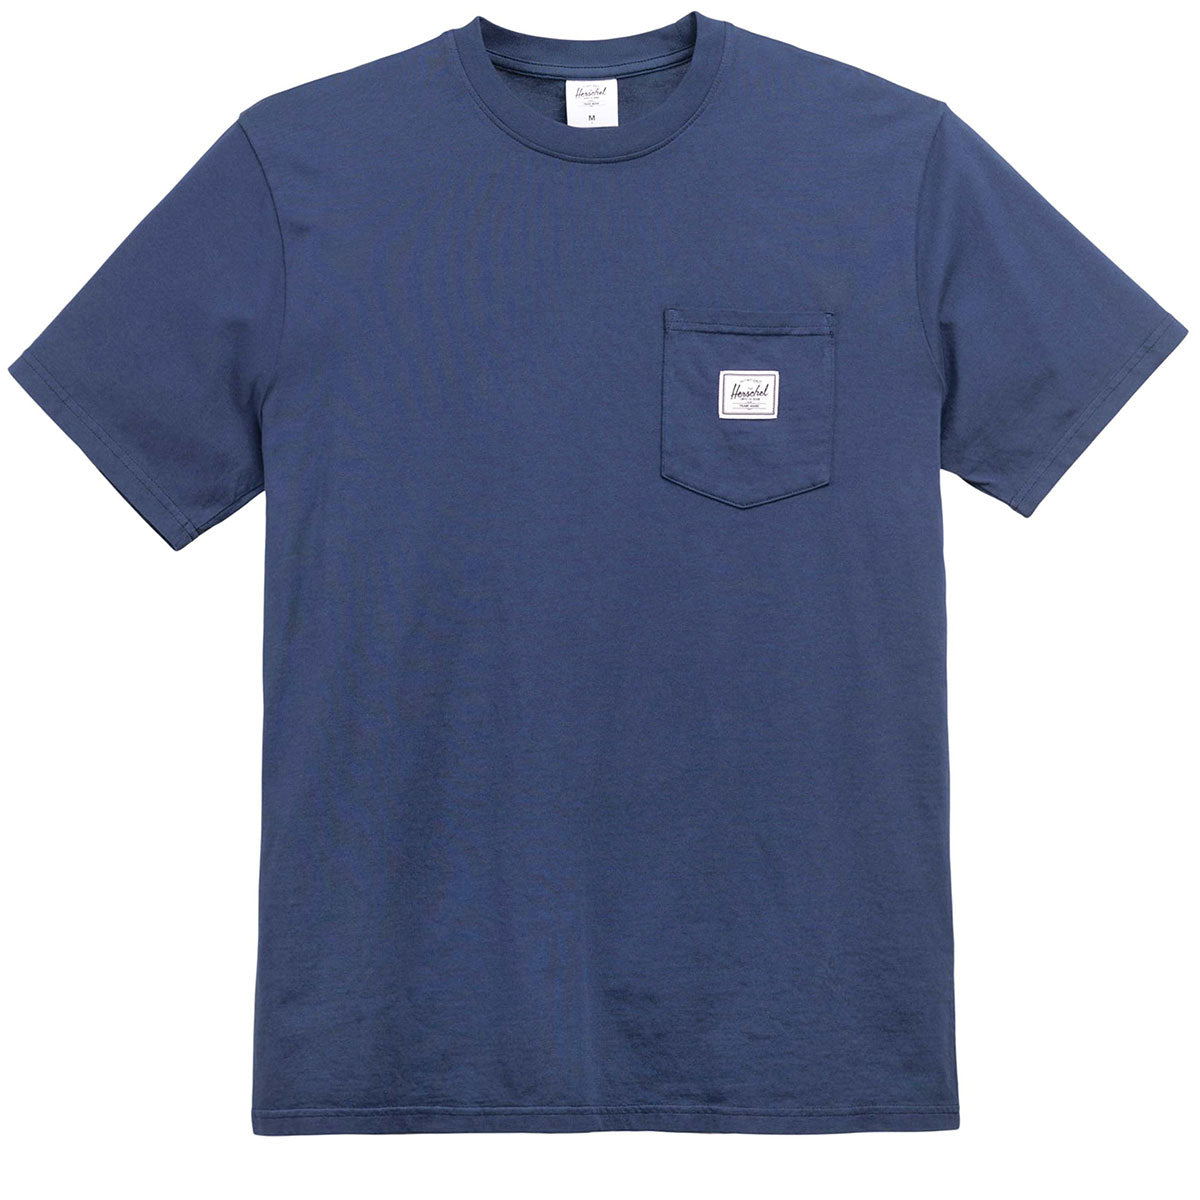 Herschel Supply Pocket T-Shirt - Dark Navy image 1